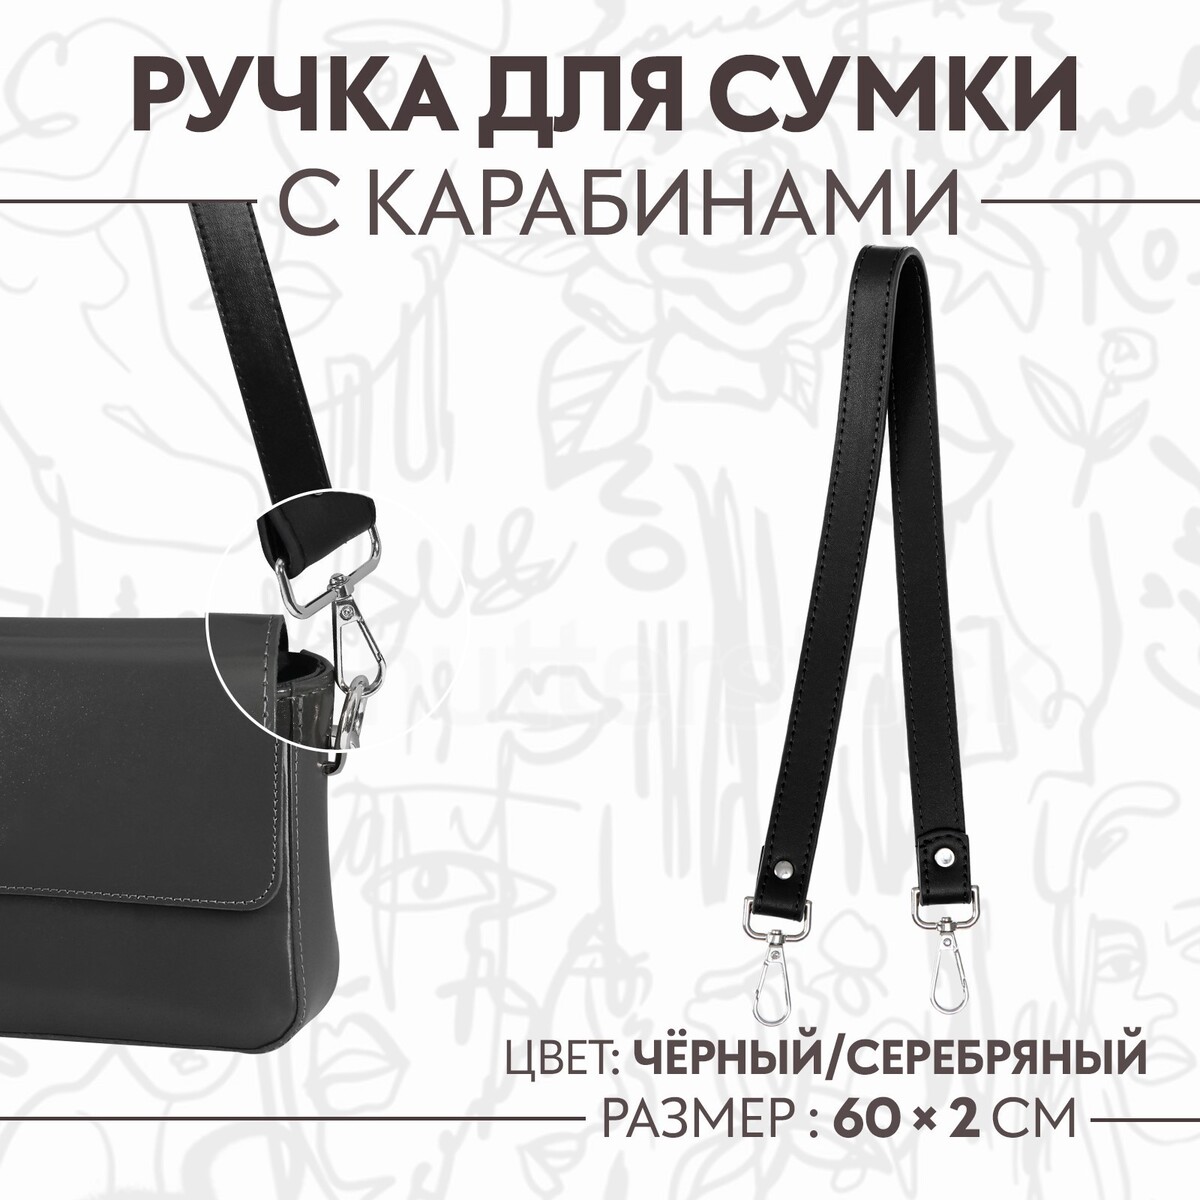 Ручка для сумки, с карабинами, 60 × 2 см, цвет черный ручка для сумки с карабинами 60 × 2 см